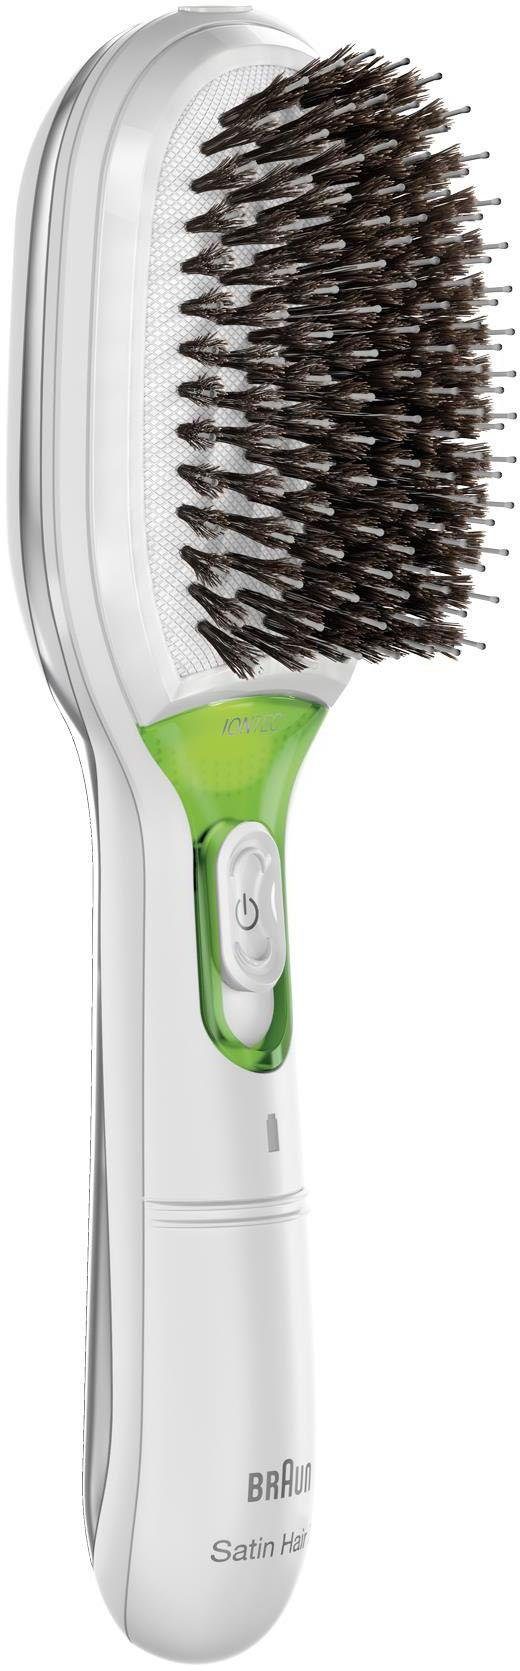 IONTEC Haarglättbürste Hair Braun BR750, Satin 7 Glanz-Förderung Borsten, Ionen-Technologie zur natürliche